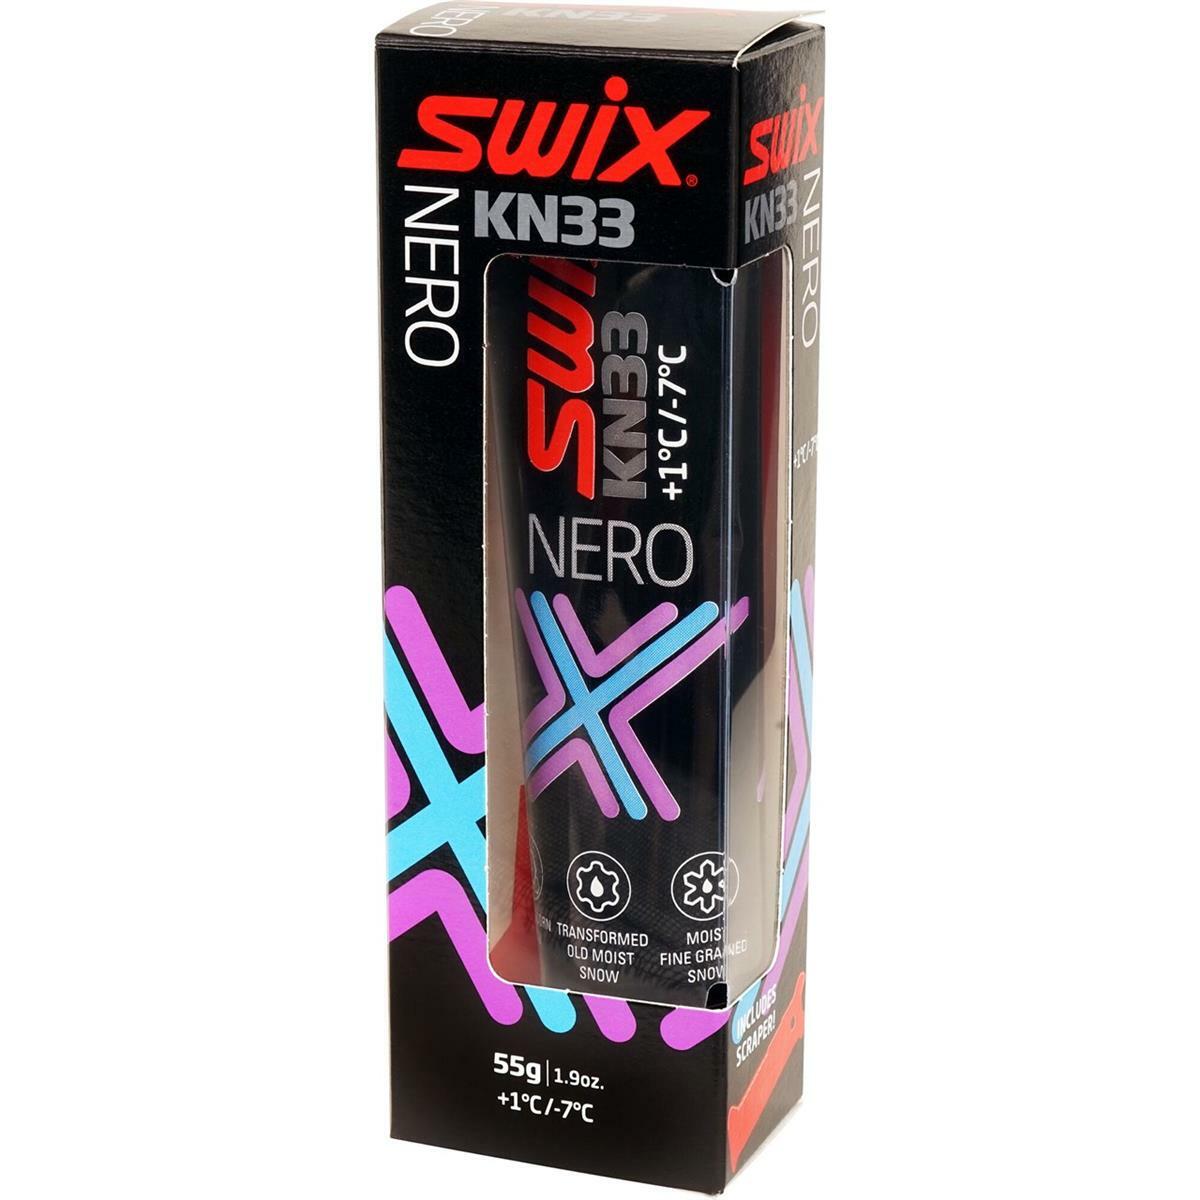 Swix KN33 Nero, +1C/-7C